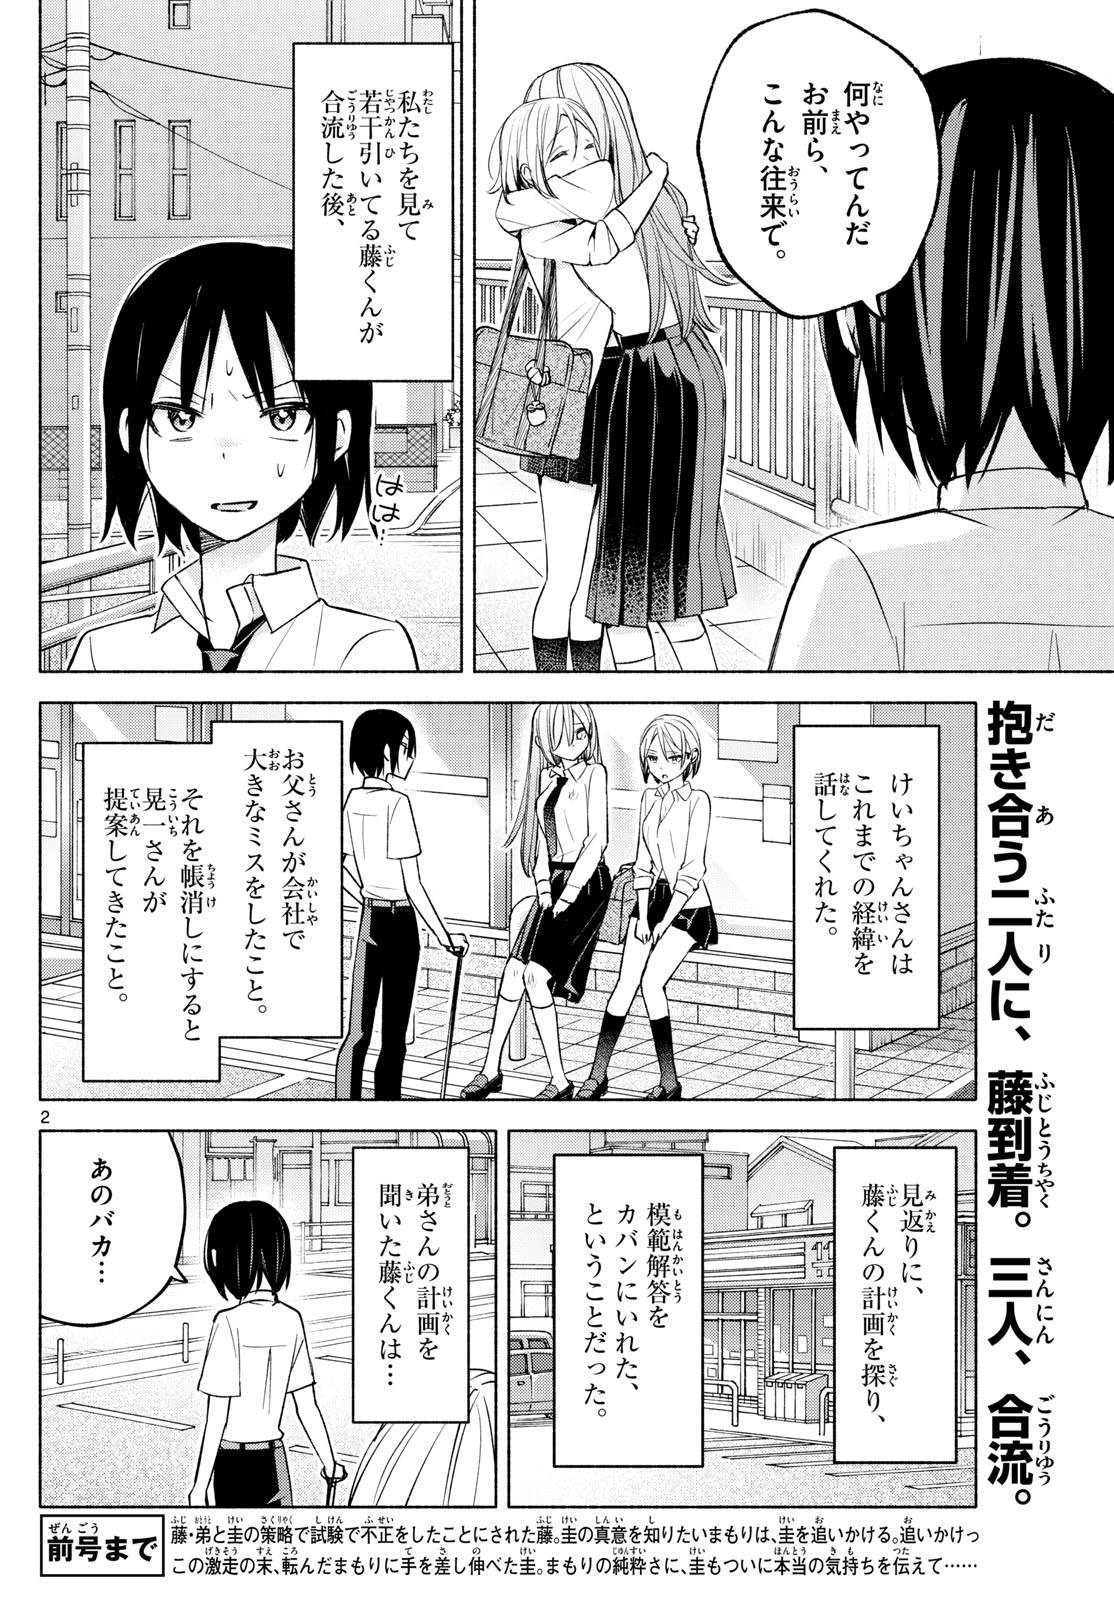 Kimi to Warui Koto ga Shitai - Chapter 042 - Page 2